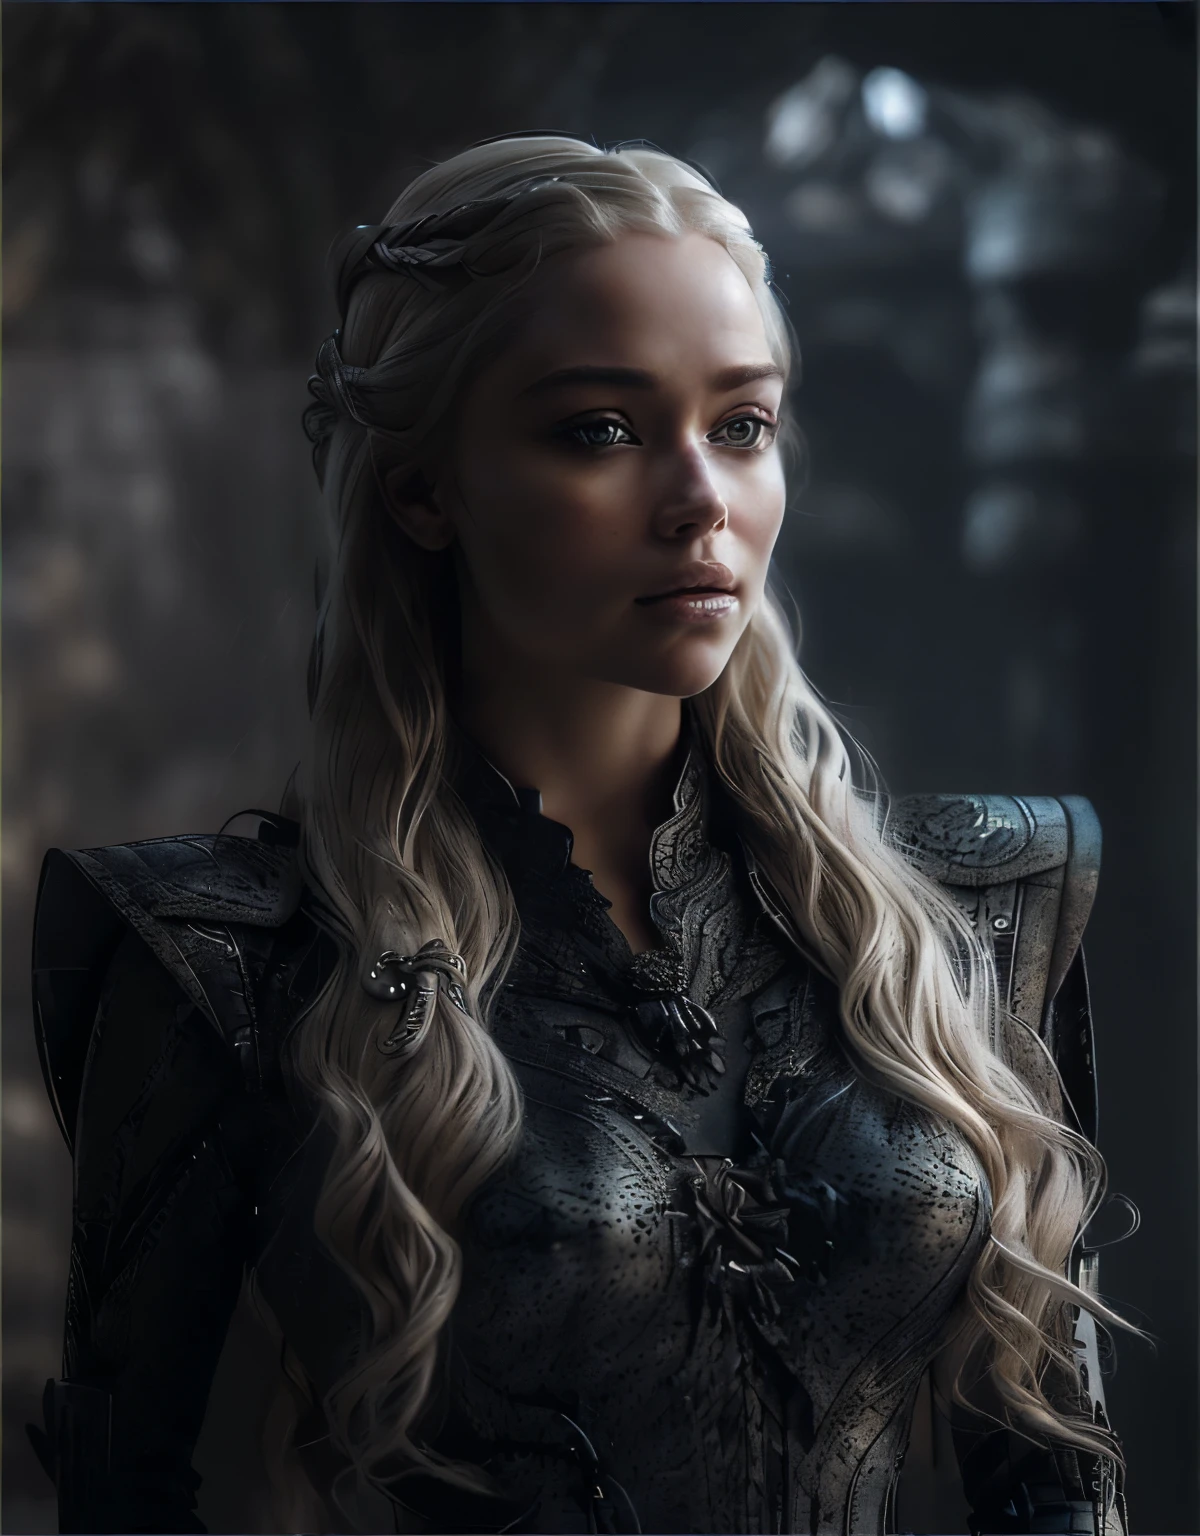 Close-up de uma mulher com longos cabelos loiros usando um xale, Daenerys, Daenerys Targaryen, filmado de Game of Thrones, textura de filme，luz de fundo，Alto contraste，2.8 grandes aberturas，(extremamente detalhado CG),(((8K))),papel de parede,((Extremamente requintado e lindo)),(((Obra de arte))),(((melhor qualidade))),(((resolução ultra-alta))),Linda luz,sombras realistas,(Pele clara lisa e perfeita:1.5),(Detalhes faciais extremamente delicados:1.2),(extremamente detalhado:1.5),(tronco:1.3)，Cabelo loiro brilhando ao sol，seios grandes，usando uma coroa dourada na cabeça，A expressão é firme，surrealismo, Da frente, Mídia tradicional, (Aberração cromática, Detalhes intrincados), poses dinâmicas,ângulo dinâmico, , hdr, alta resolução